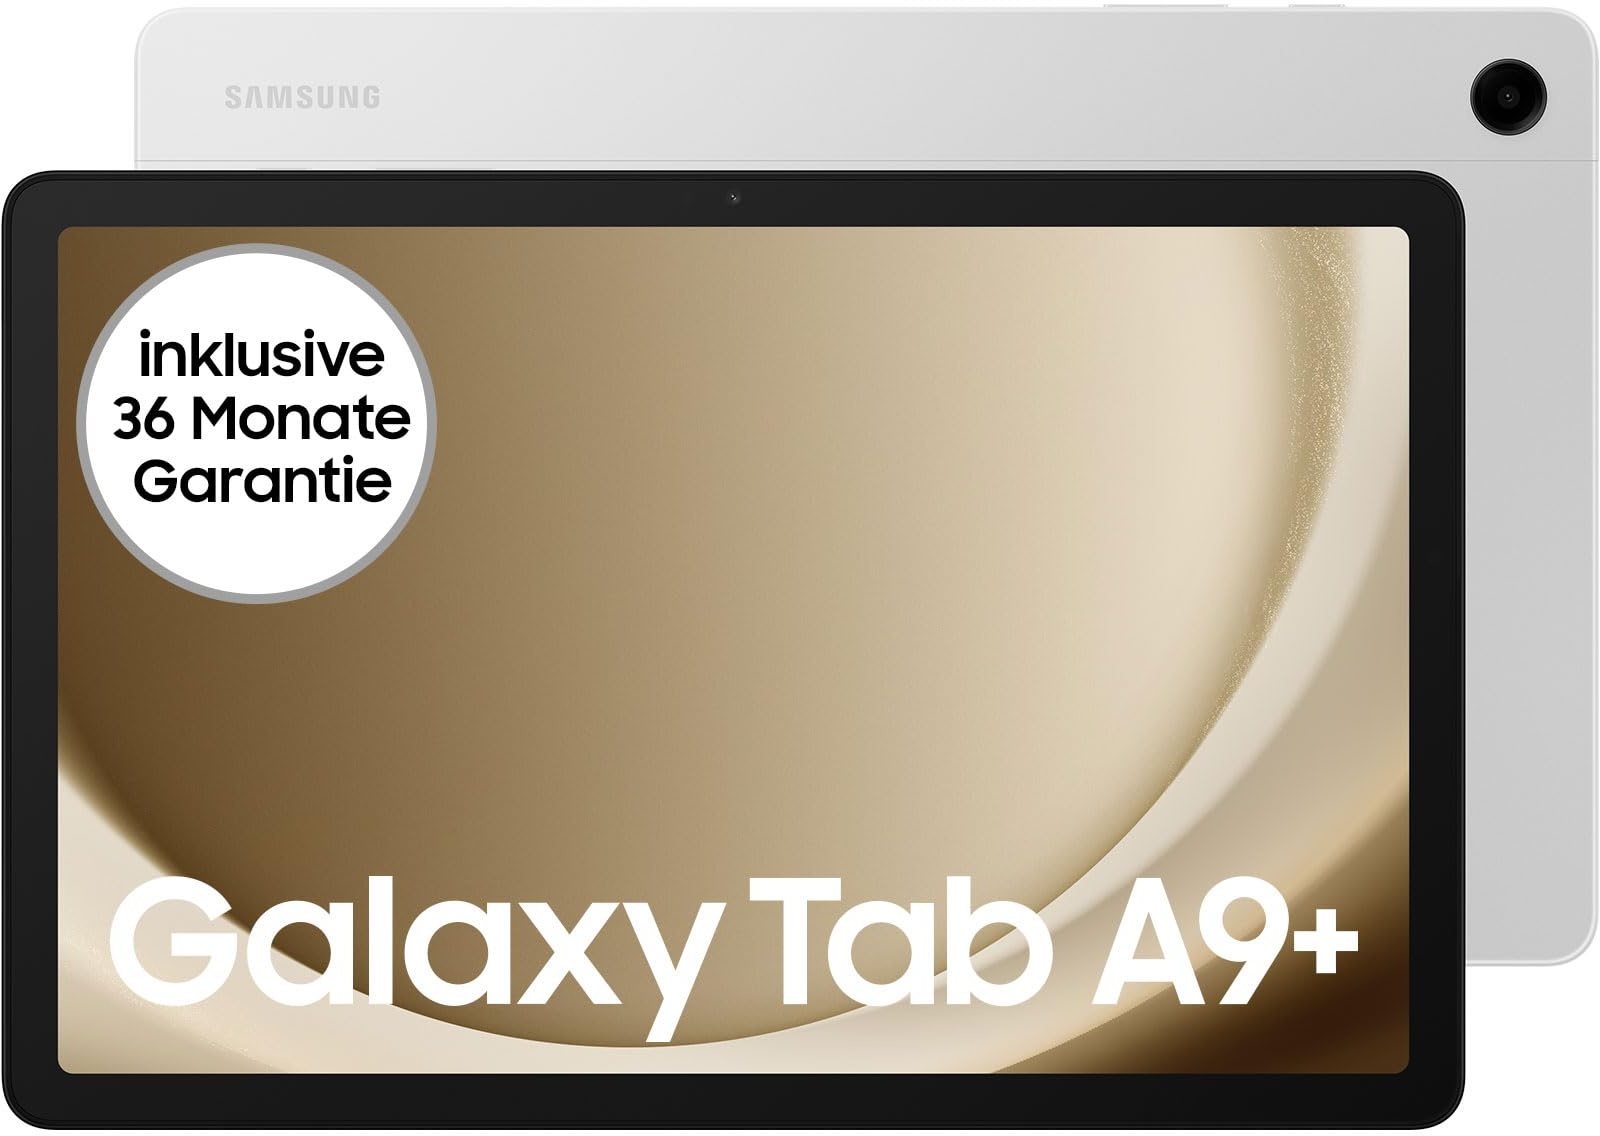 Samsung Galaxy Tab A9+ Wi-Fi Android-Tablet, 64 GB Speicherplatz, Großes Display, 3D-Sound, Simlockfrei ohne Vertrag, Silver, Inkl. 3 Jahre Herstellergarantie [Exklusiv bei Amazon]